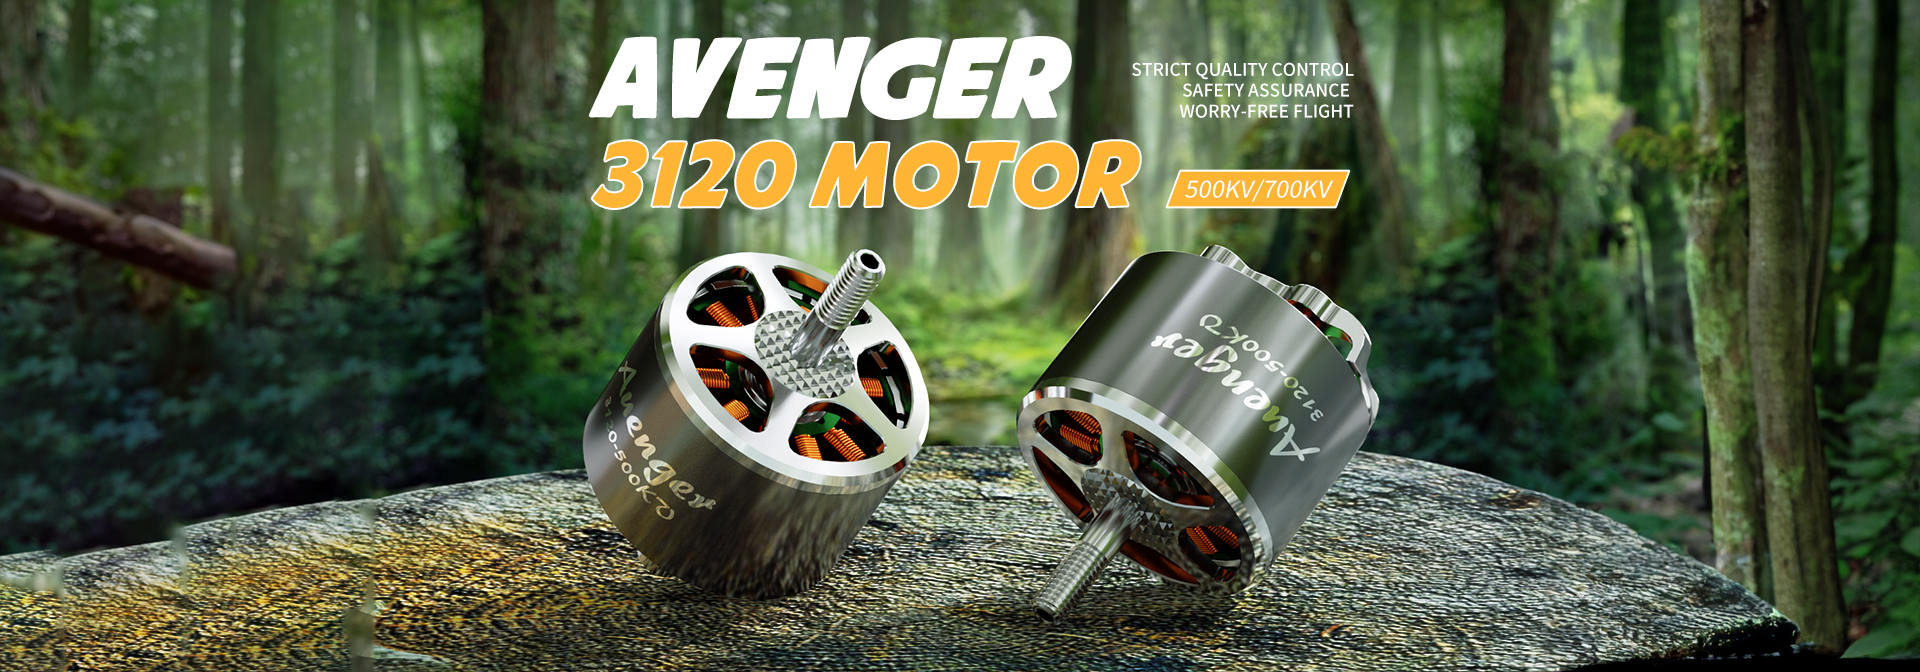 Avenger 3120 Motor